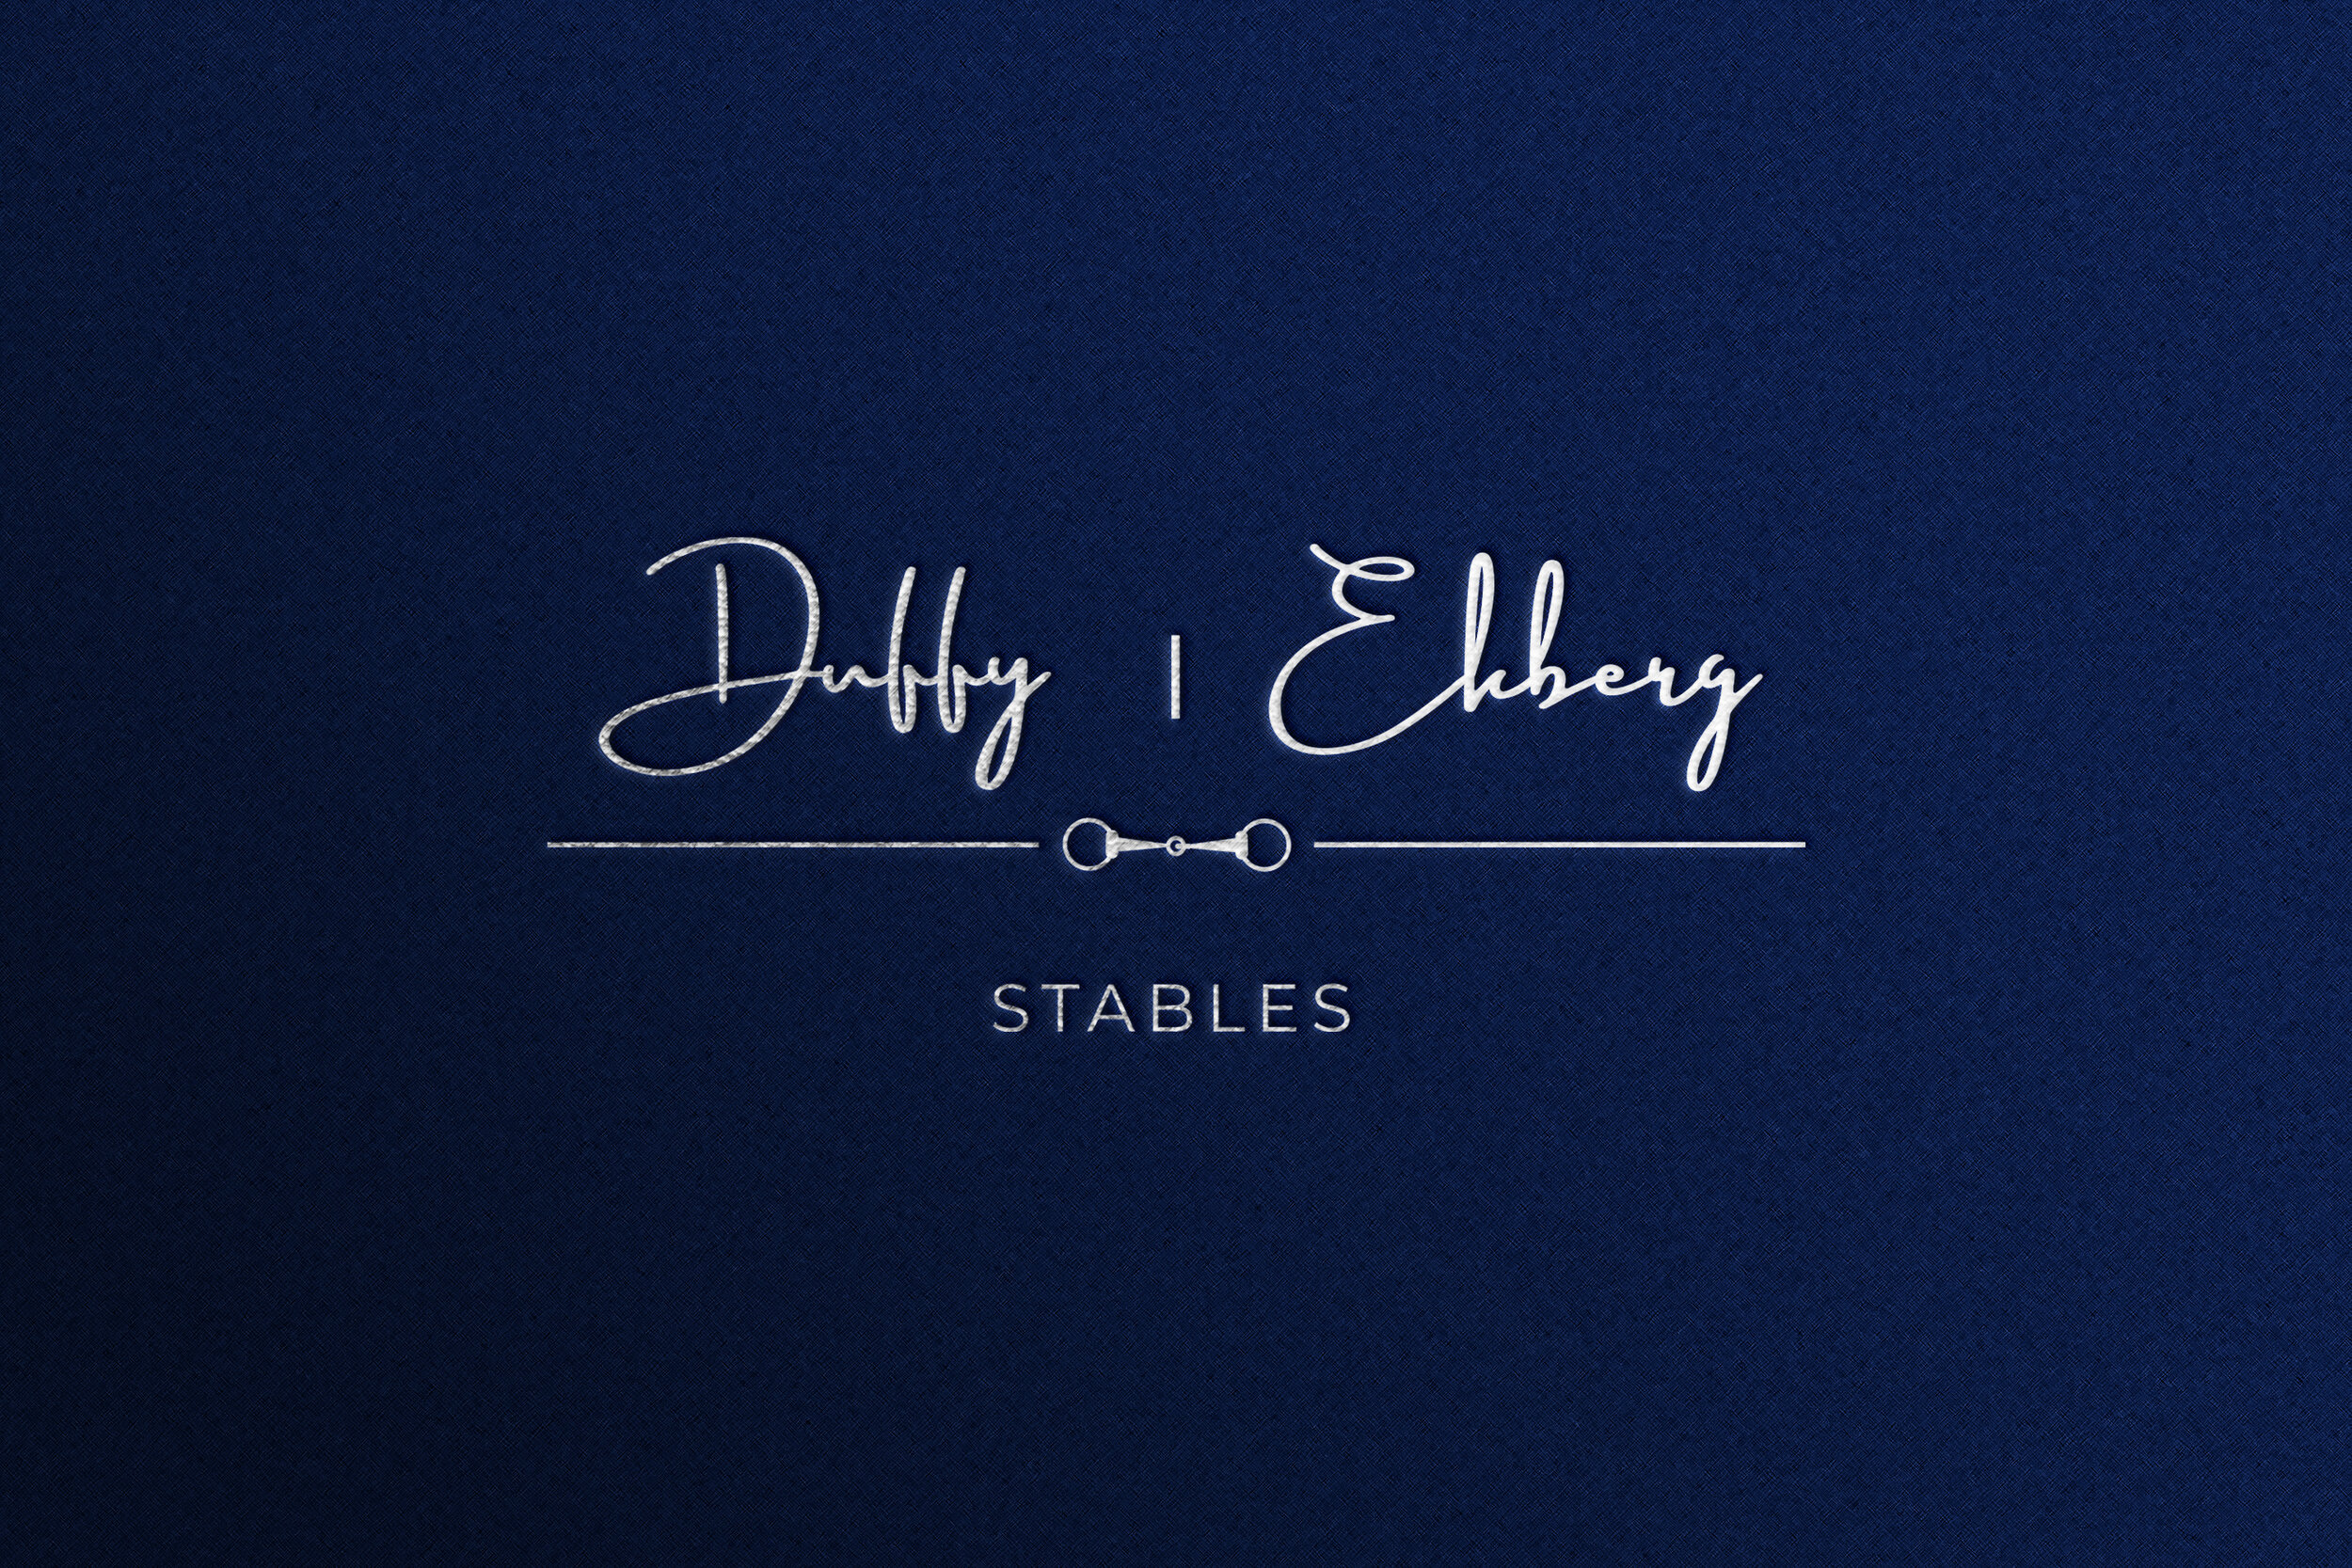 duffy ekberg small logo.jpg